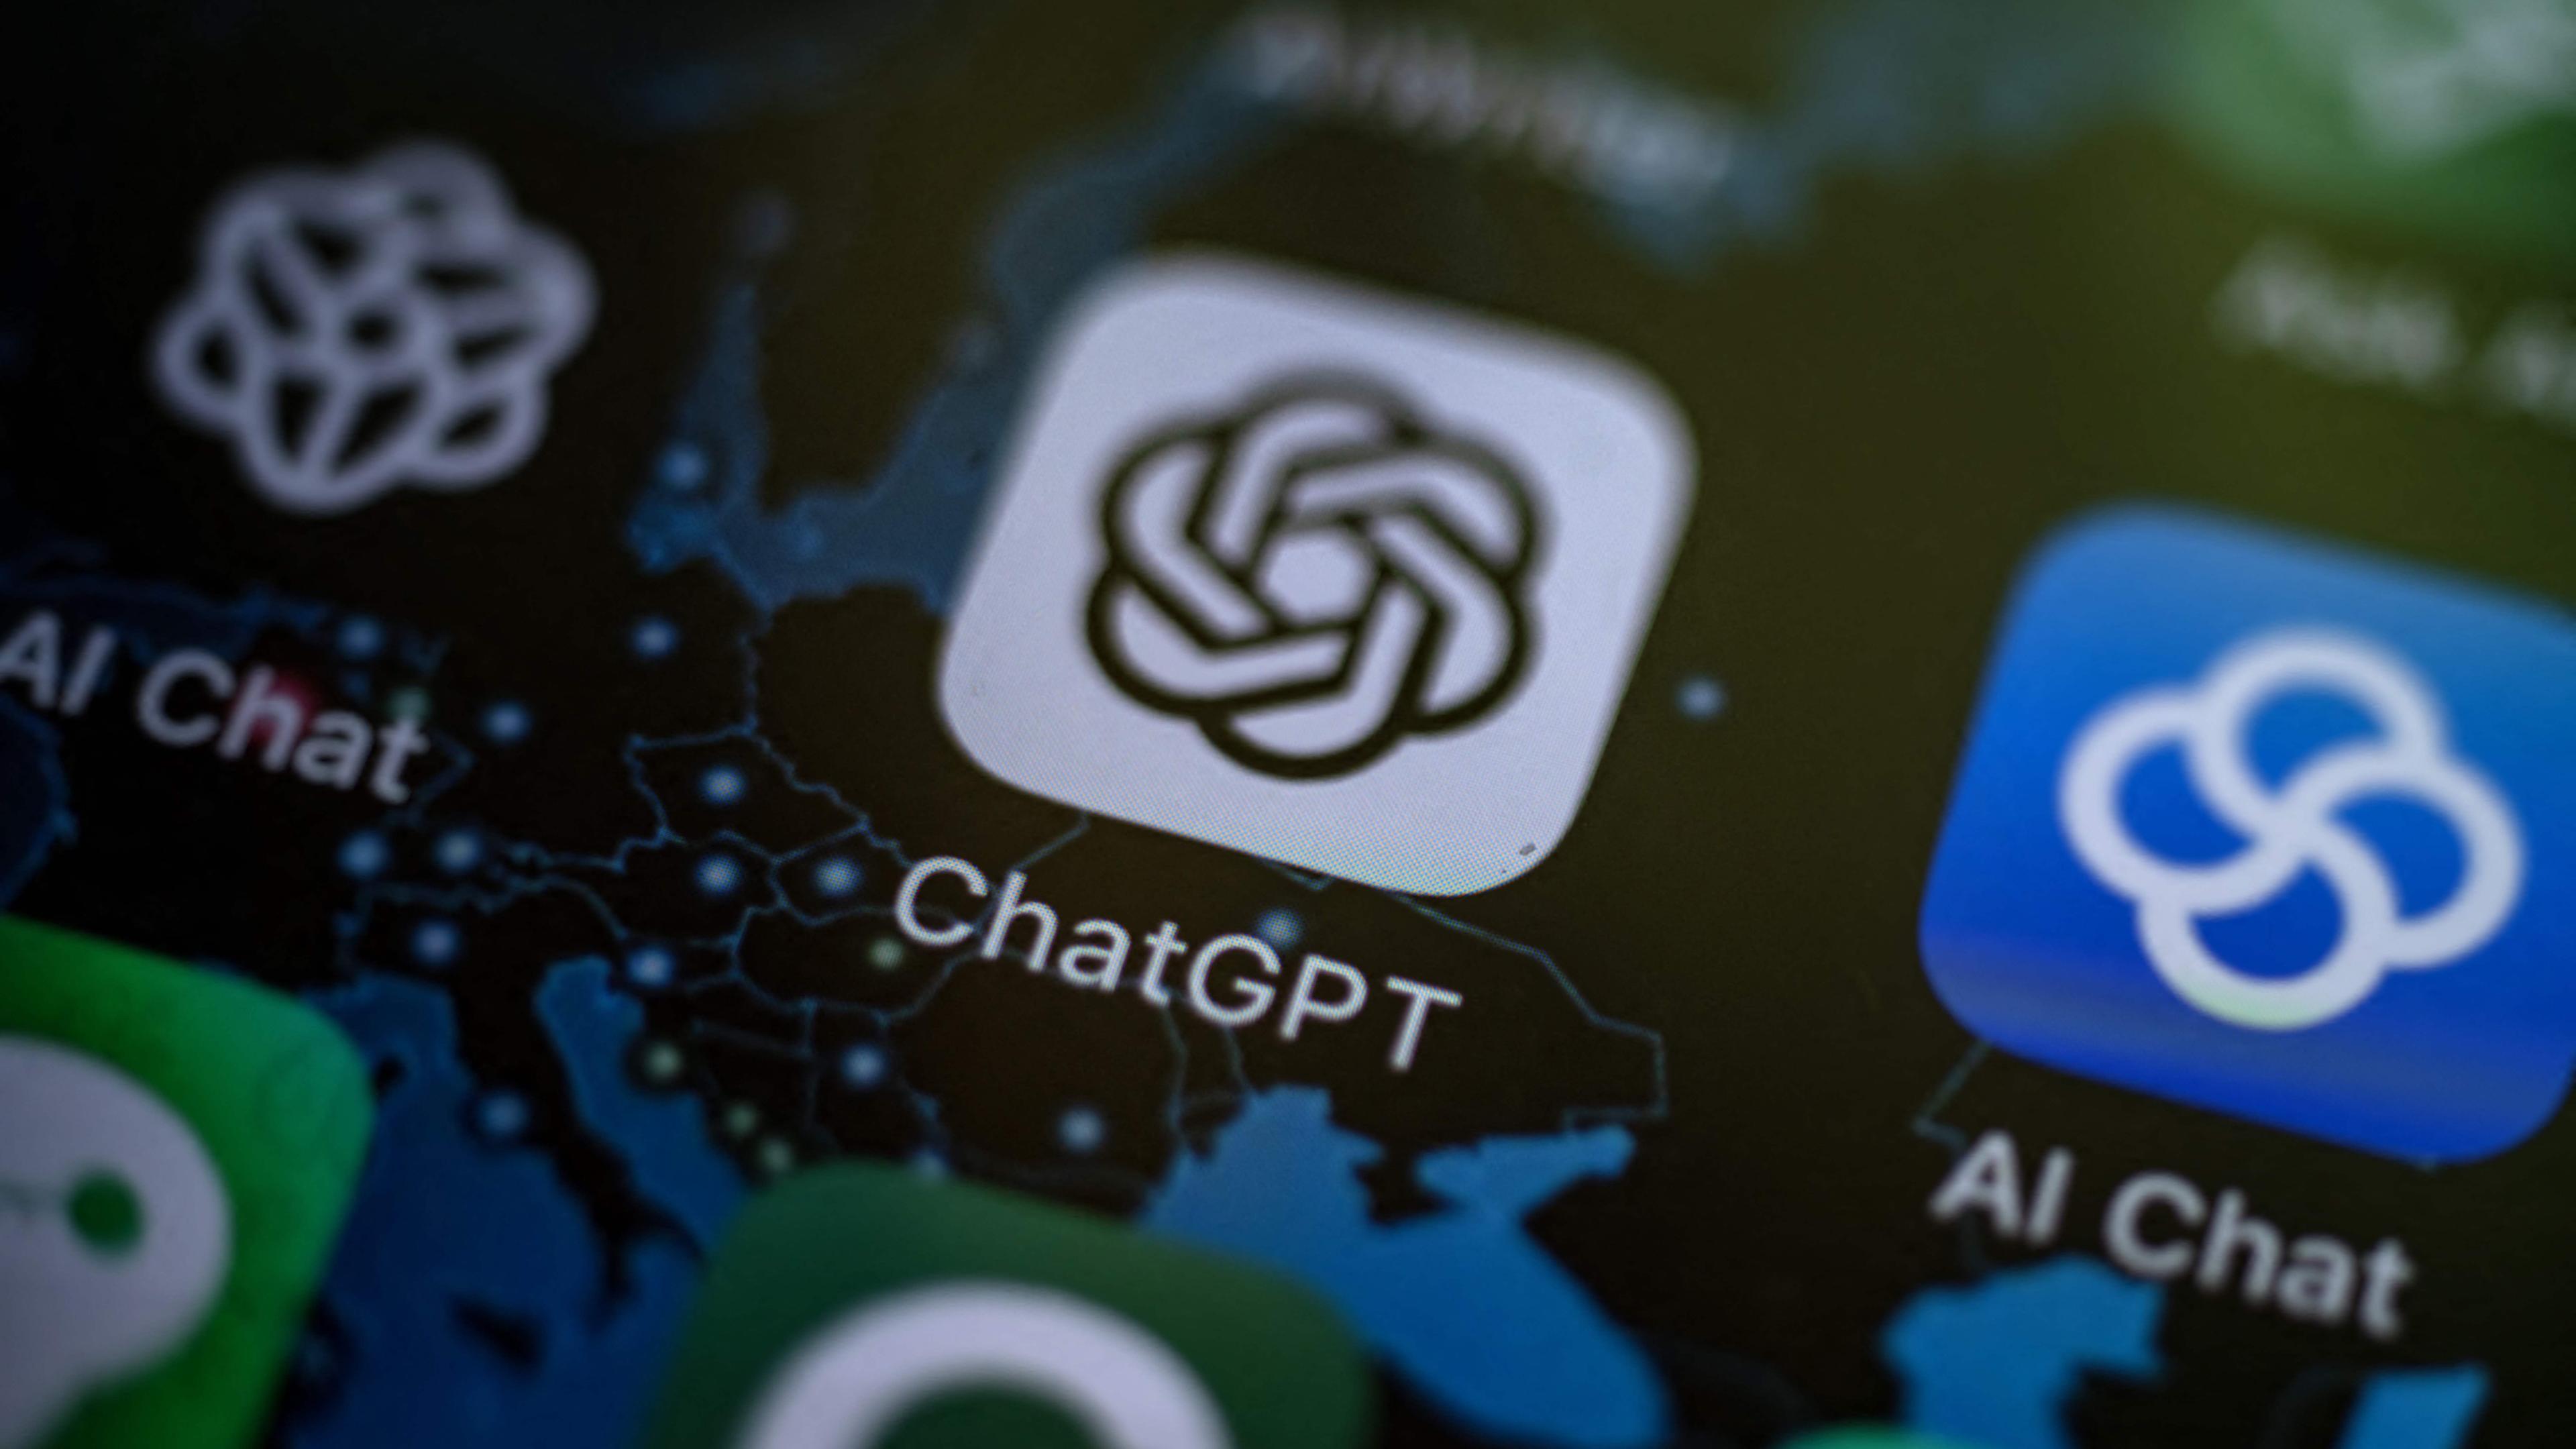 Das Bild zeigt die ChatGPT- und die AI-Chat-App auf einem Smartphone.